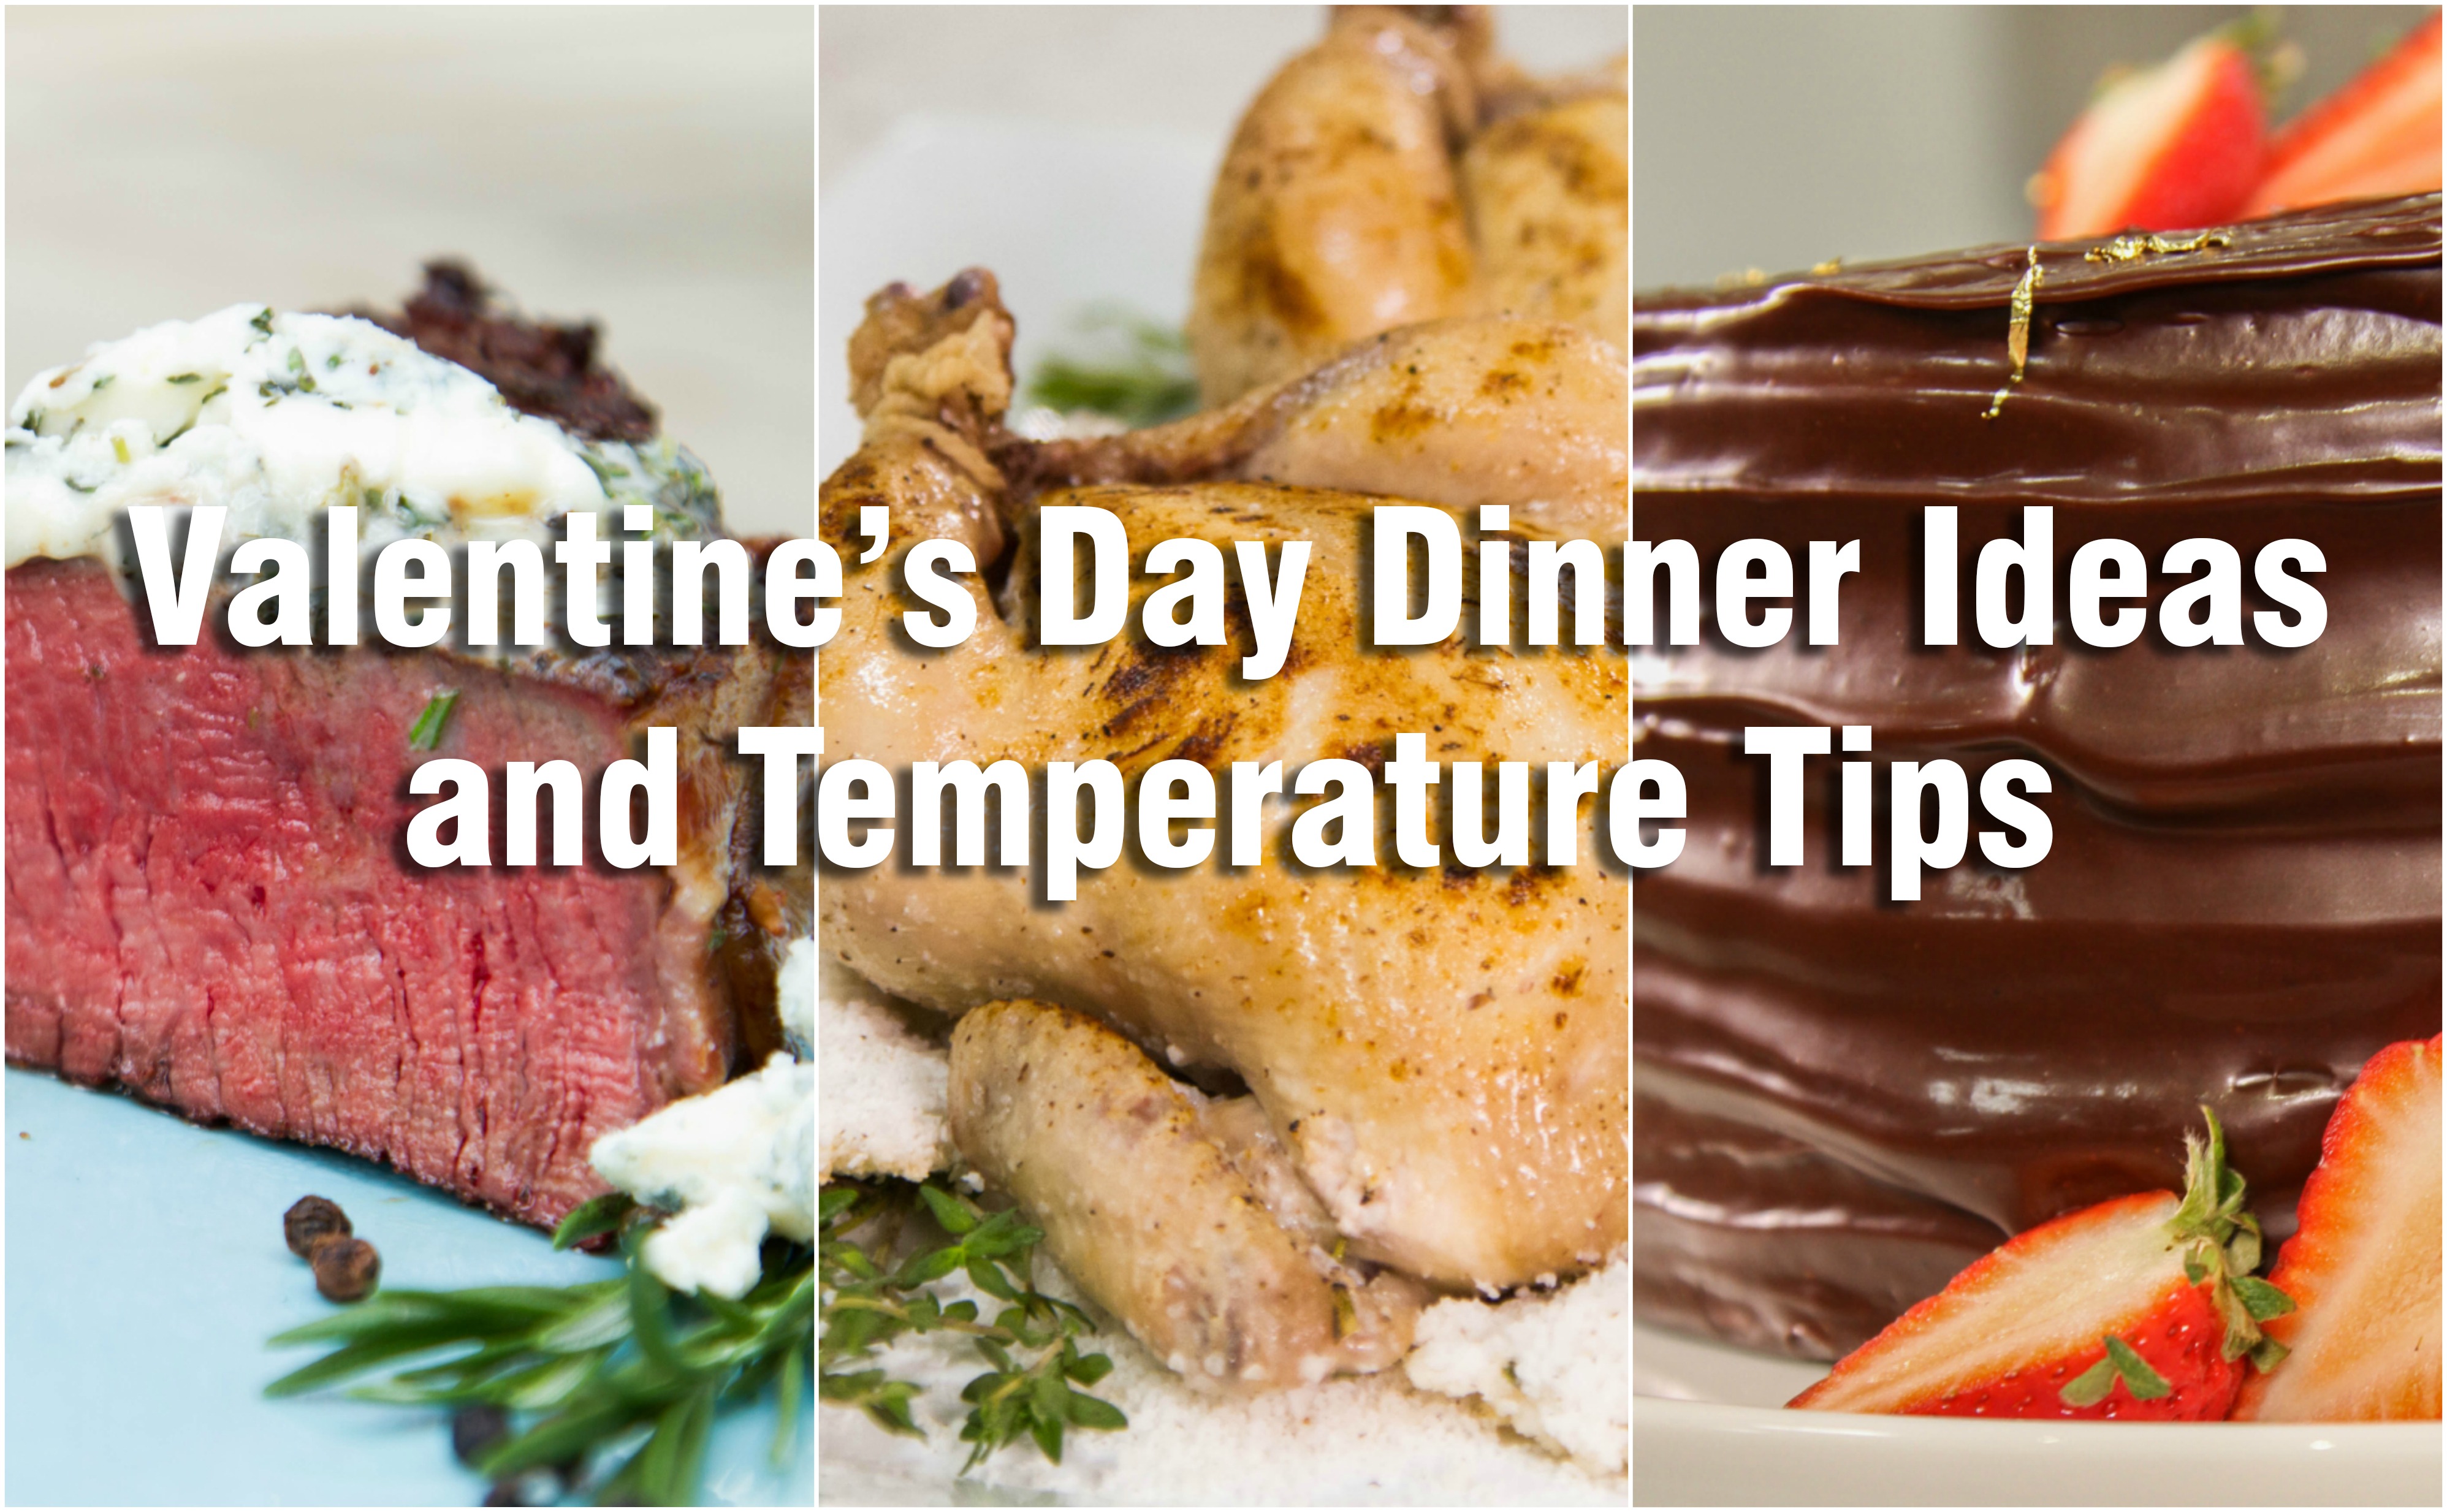 Valentines Day Dinner Ideas Header Image